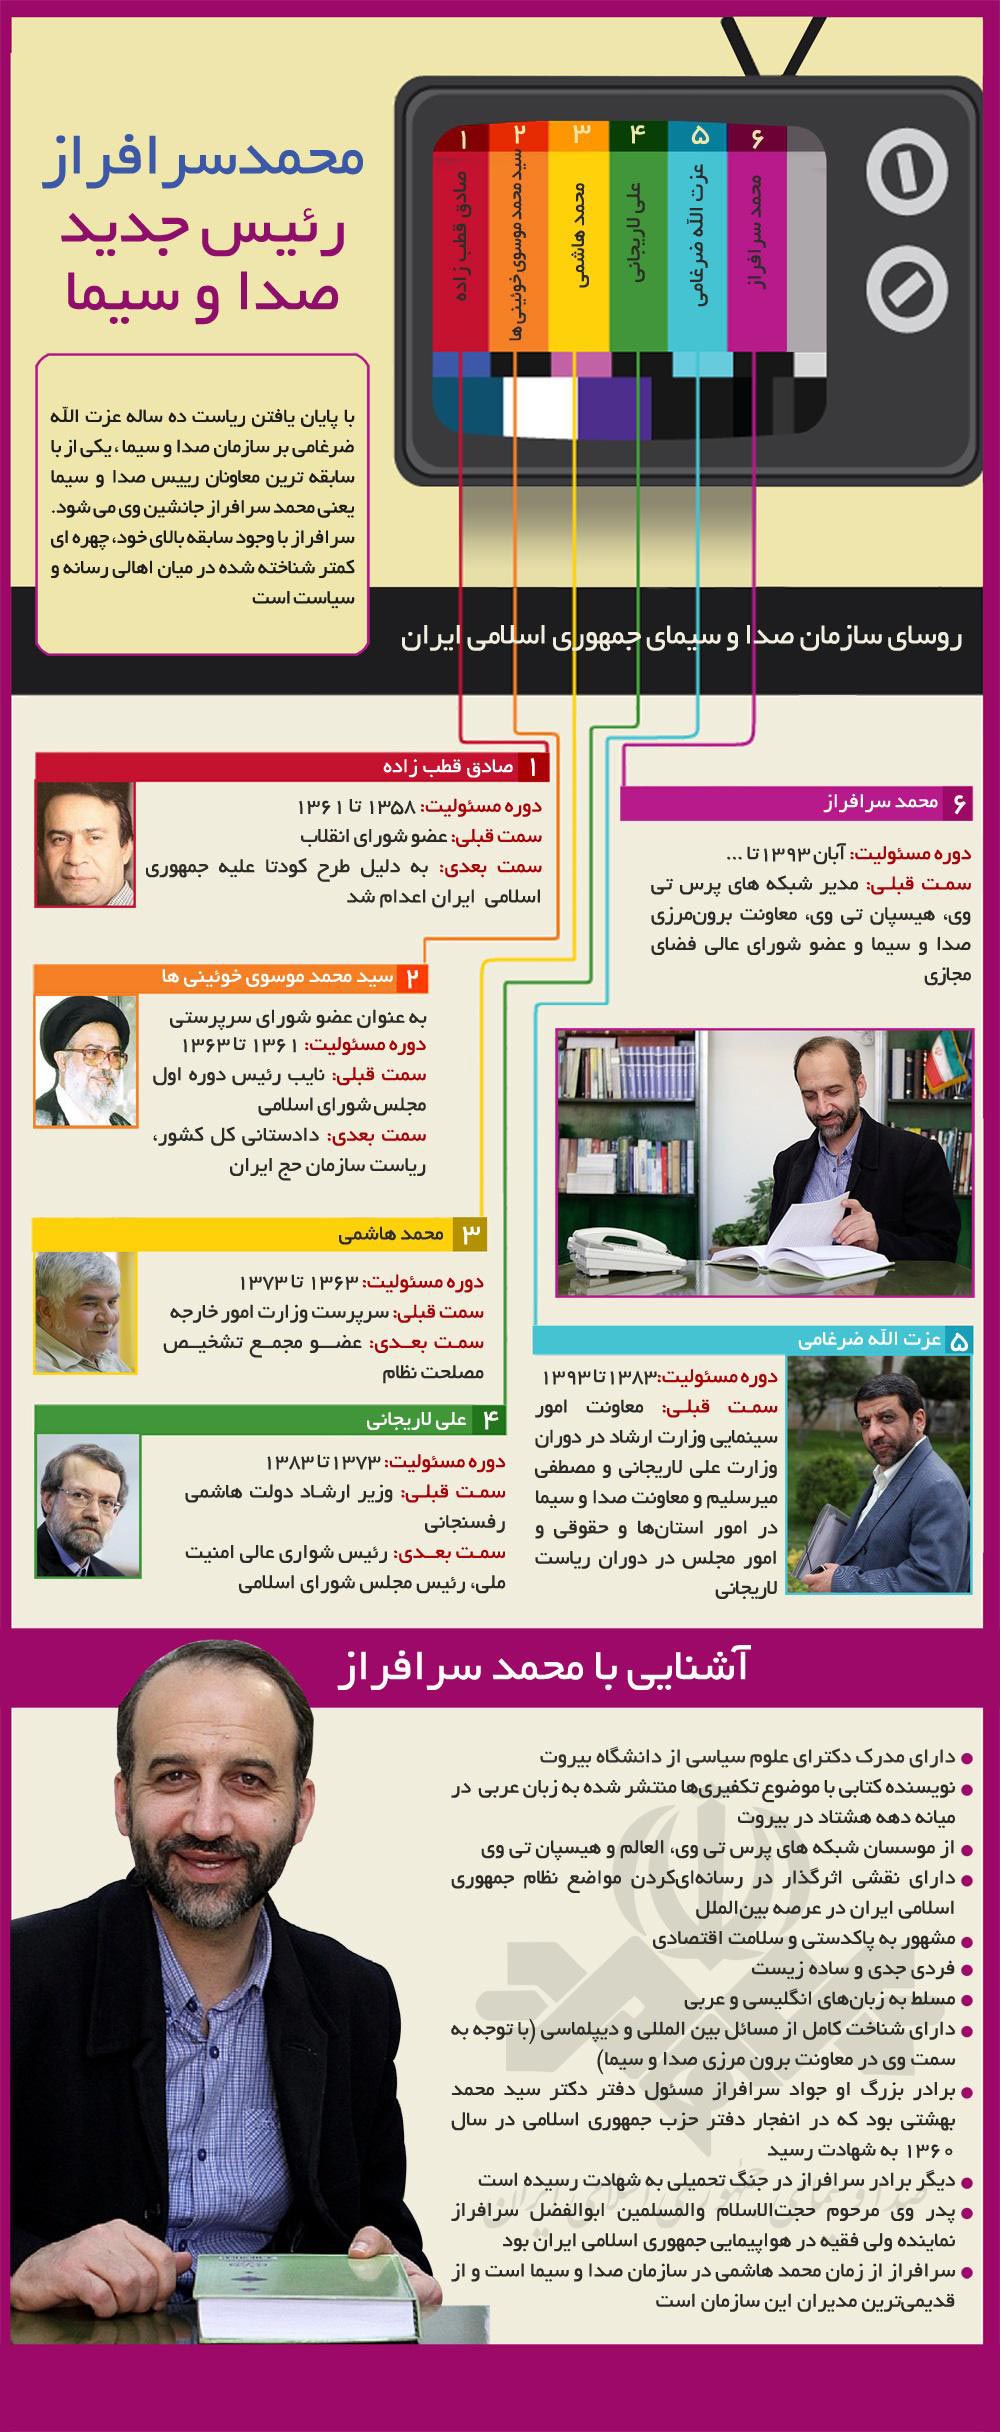 محمد سرافراز,رئیس جدید,صدا و سیما,رسانه ملی,پرس تی وی,هیسپان تی وی,دانلود عکس,الکوثر,آی فیلم,دانلود پوستر